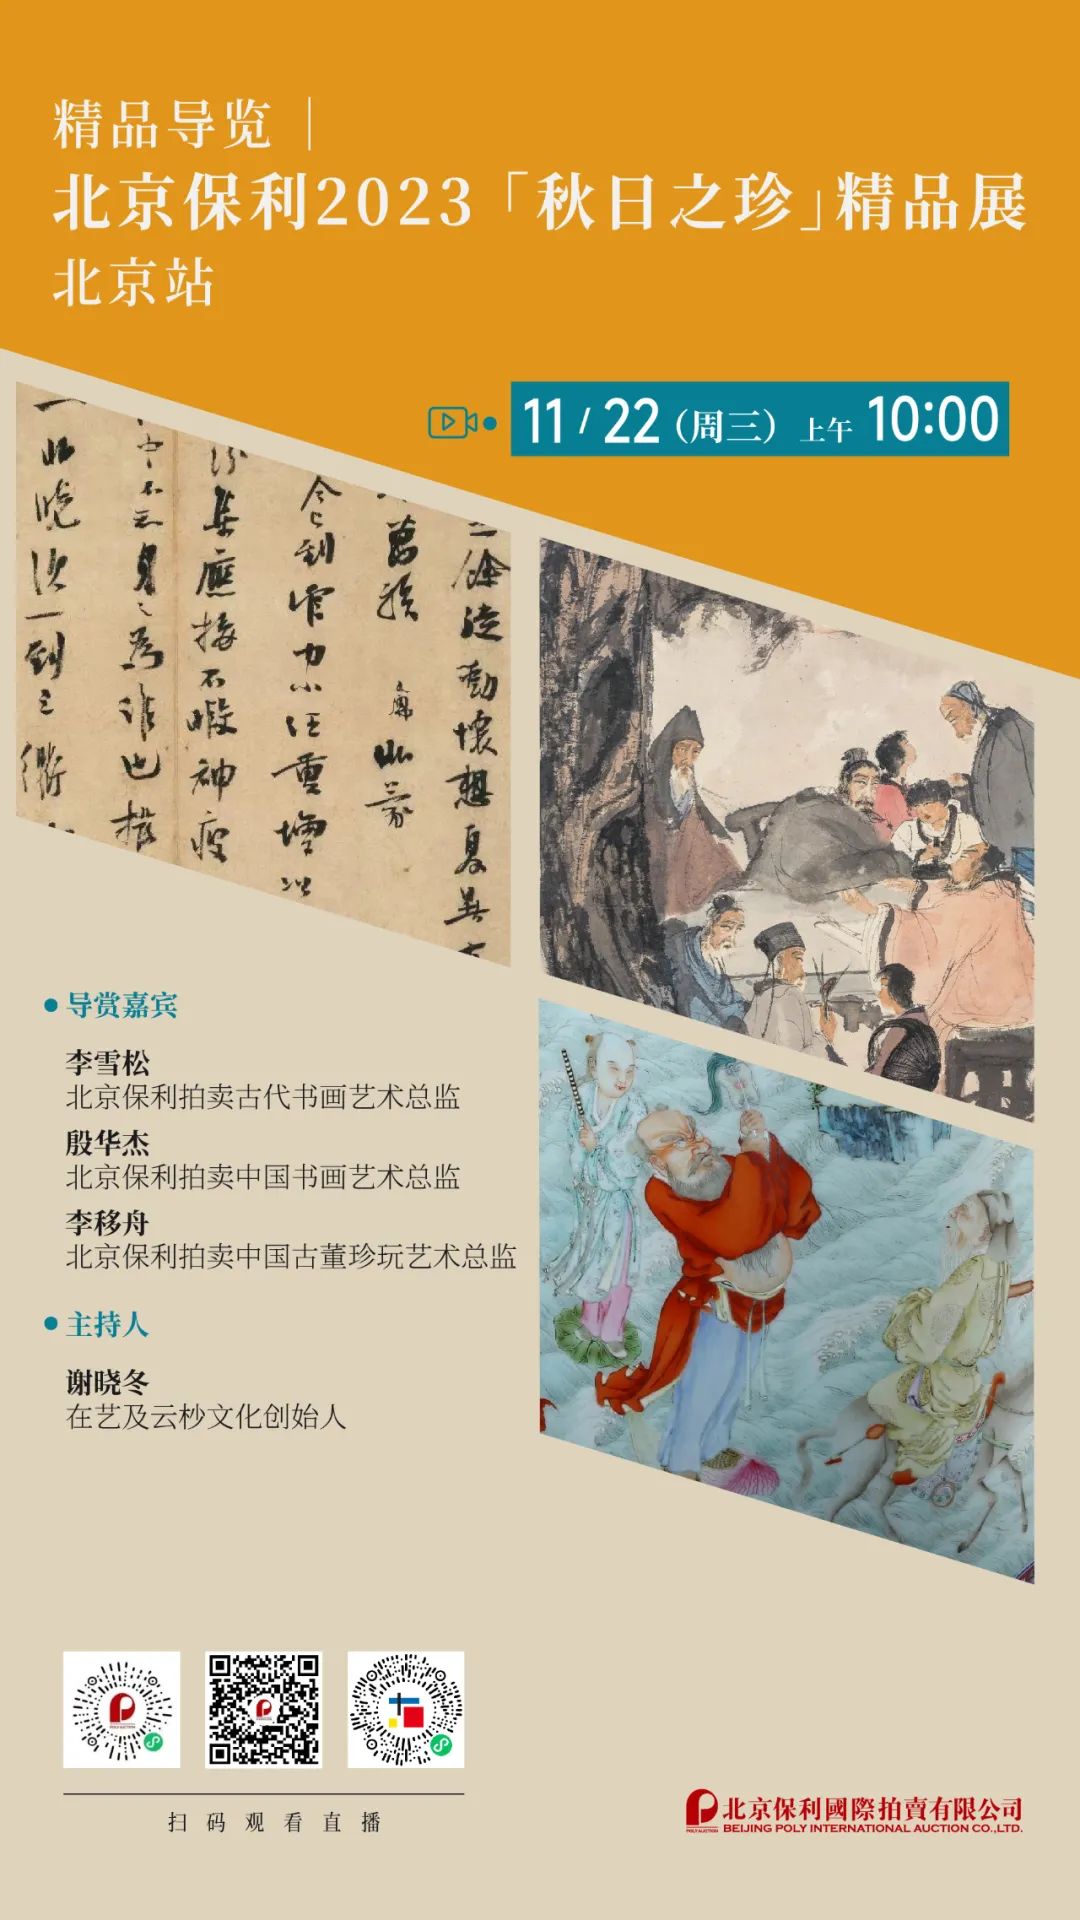 北京保利拍卖丨“秋日之珍”精品展北京站即将开展